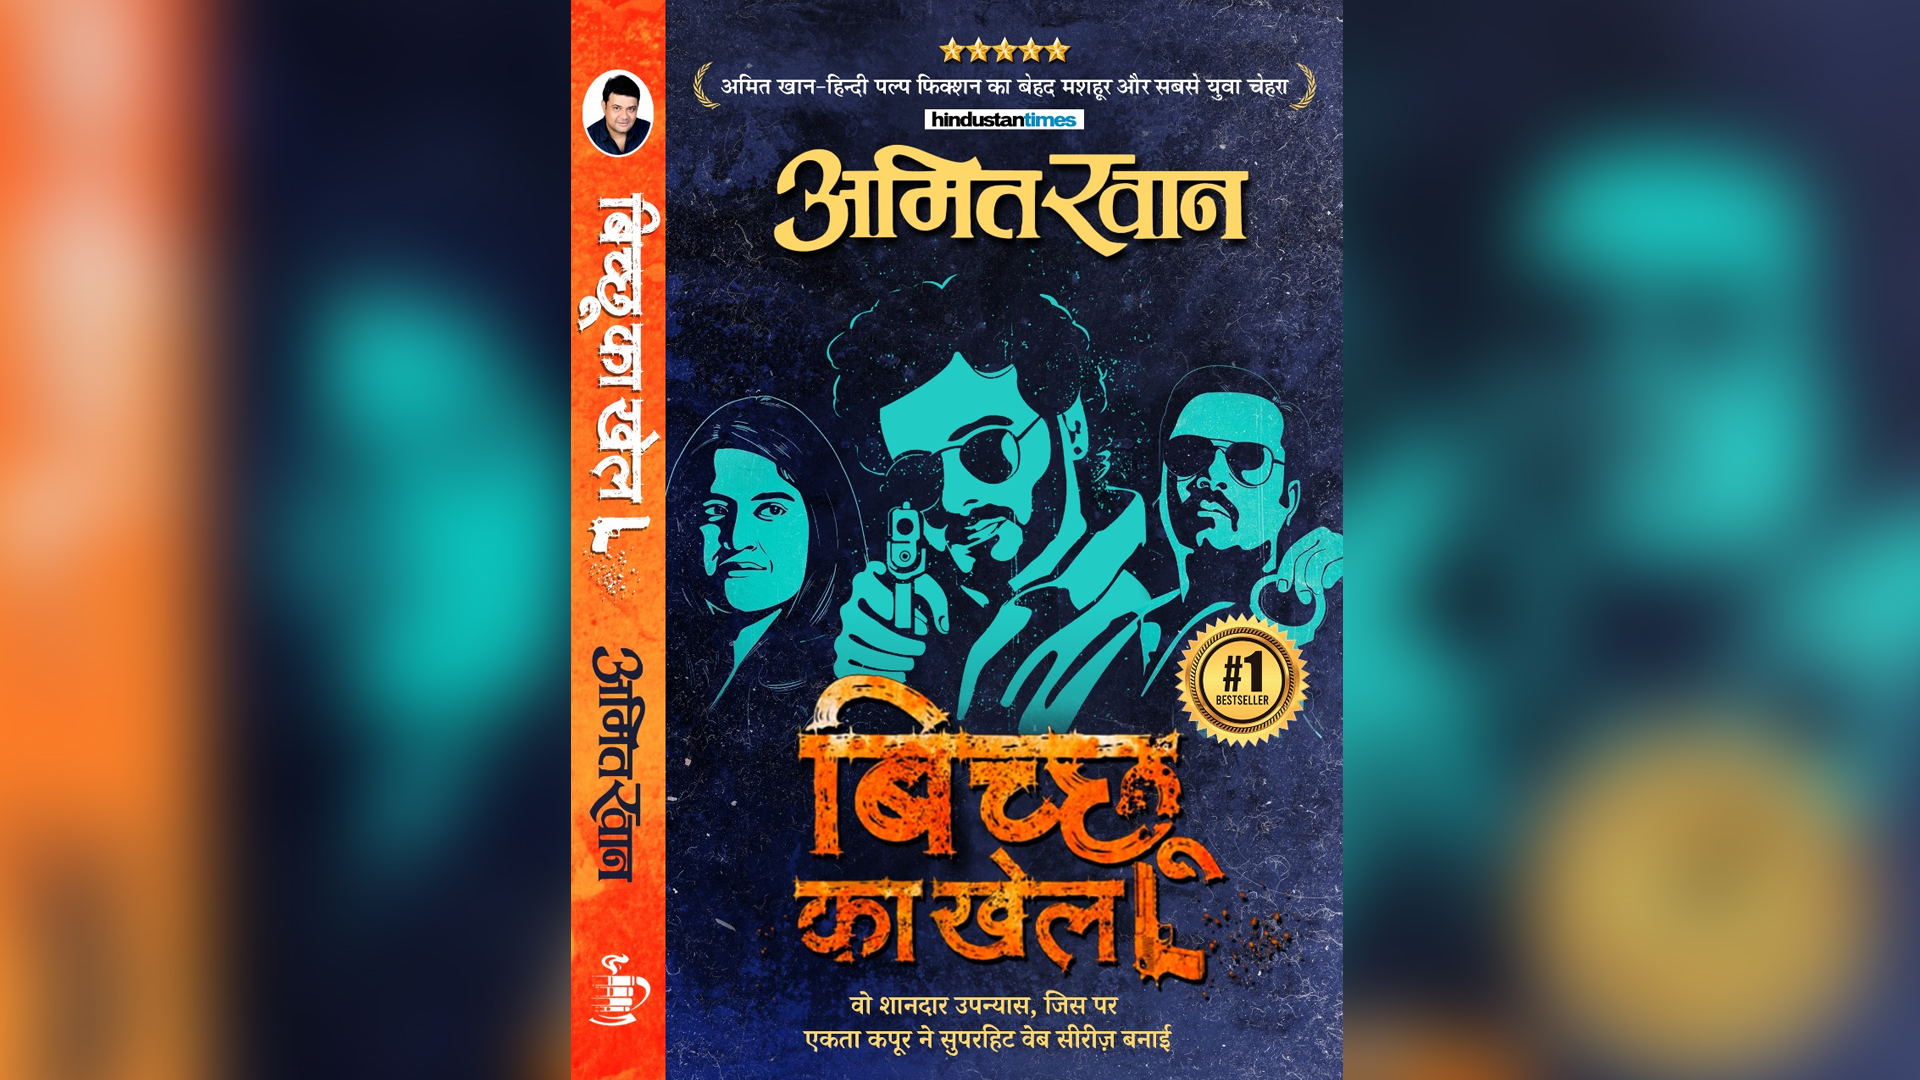 Poster of ‘Bicchoo Ka Khel’ gets imprinted on the cover of its novel!